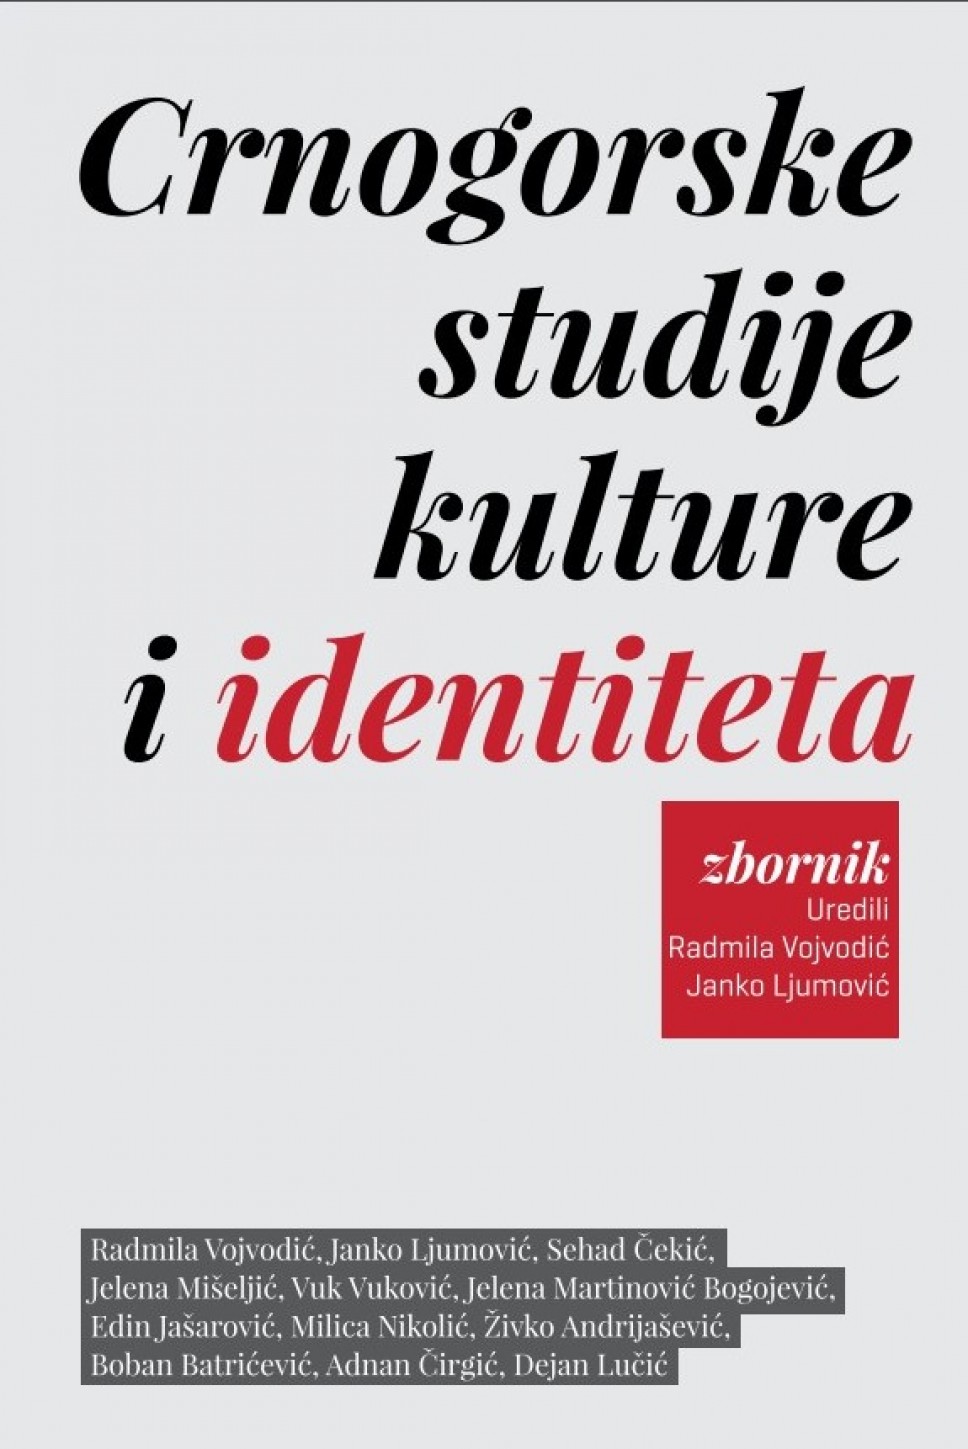 Crnogorske studije kulture i identiteta, Fakulteta dramskih umjetnosti, sada dostupne i online, u PDF formatu